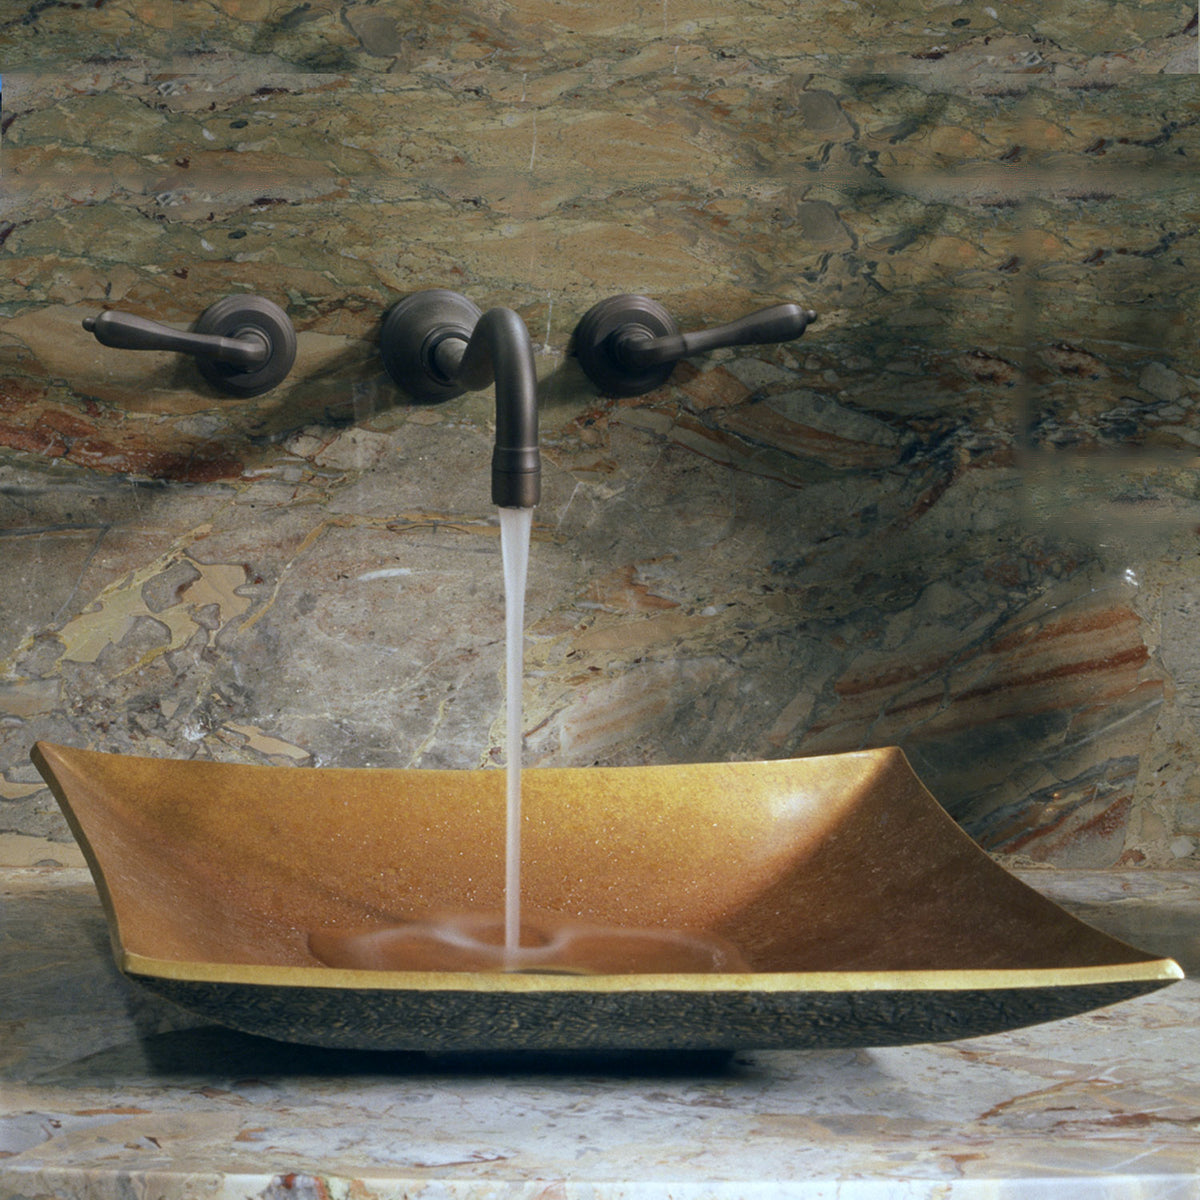 Bronze Zen Sink image 3 of 4